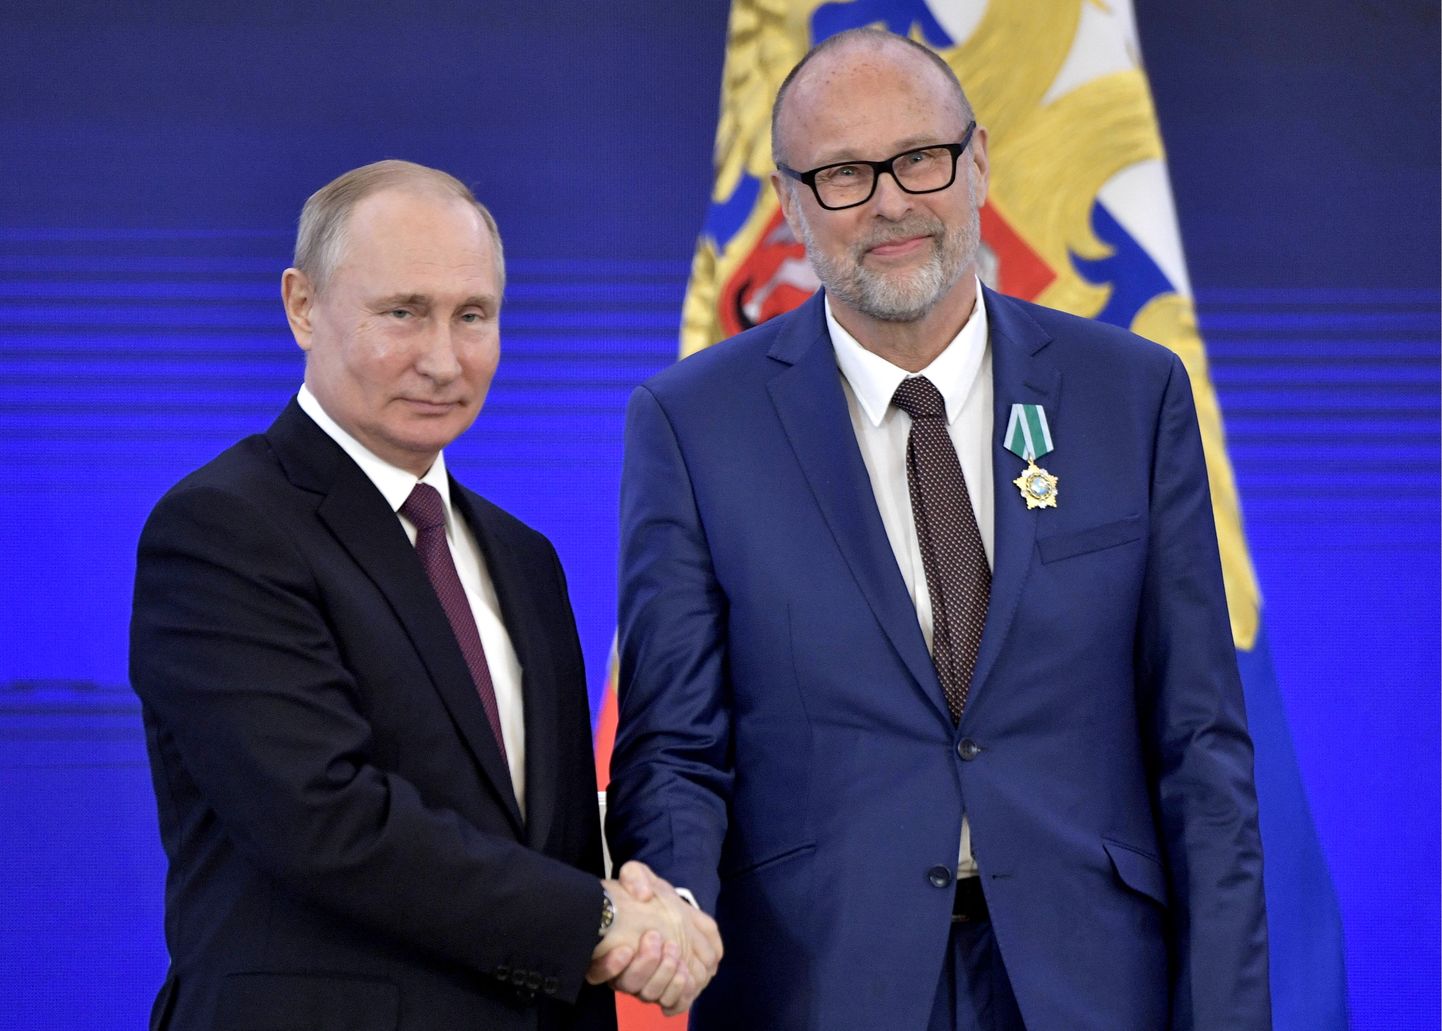 Tallinna Ülikooli emeriitprofessor Rein Müllerson sai esmaspäeval Venemaa presidendilt Vladimir Putinilt ordeni.